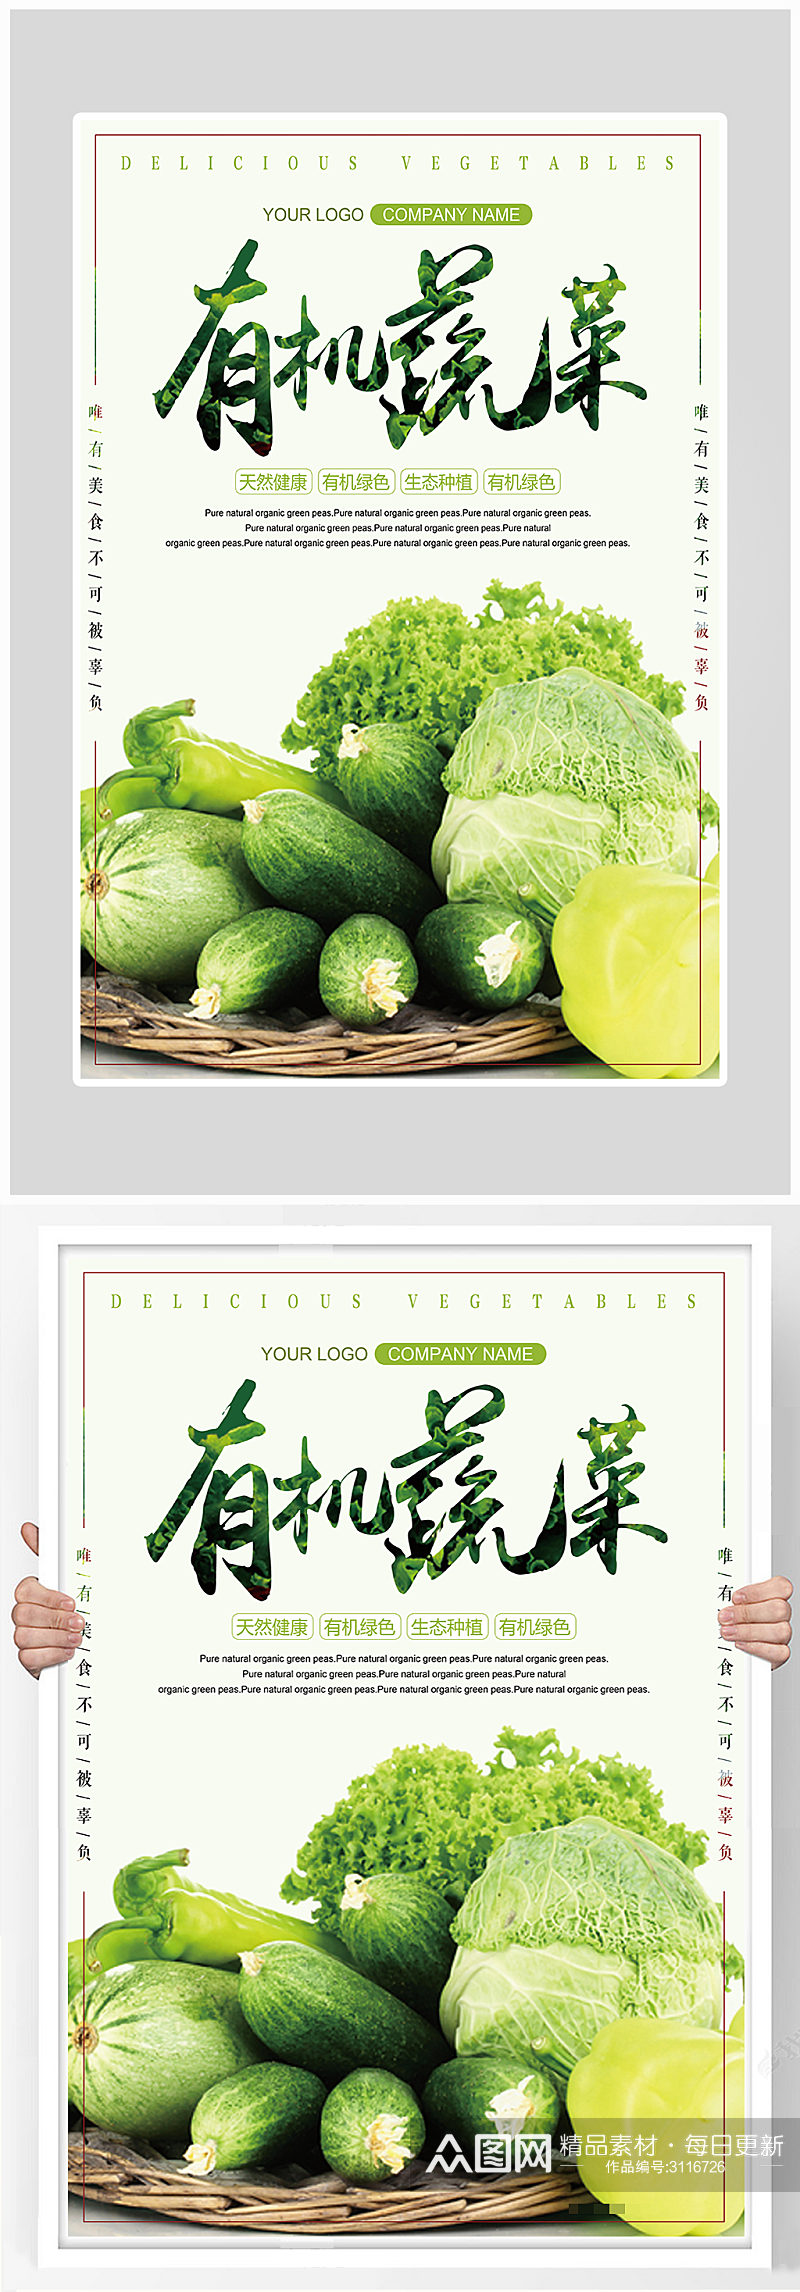 创意健康有机蔬菜海报设计素材